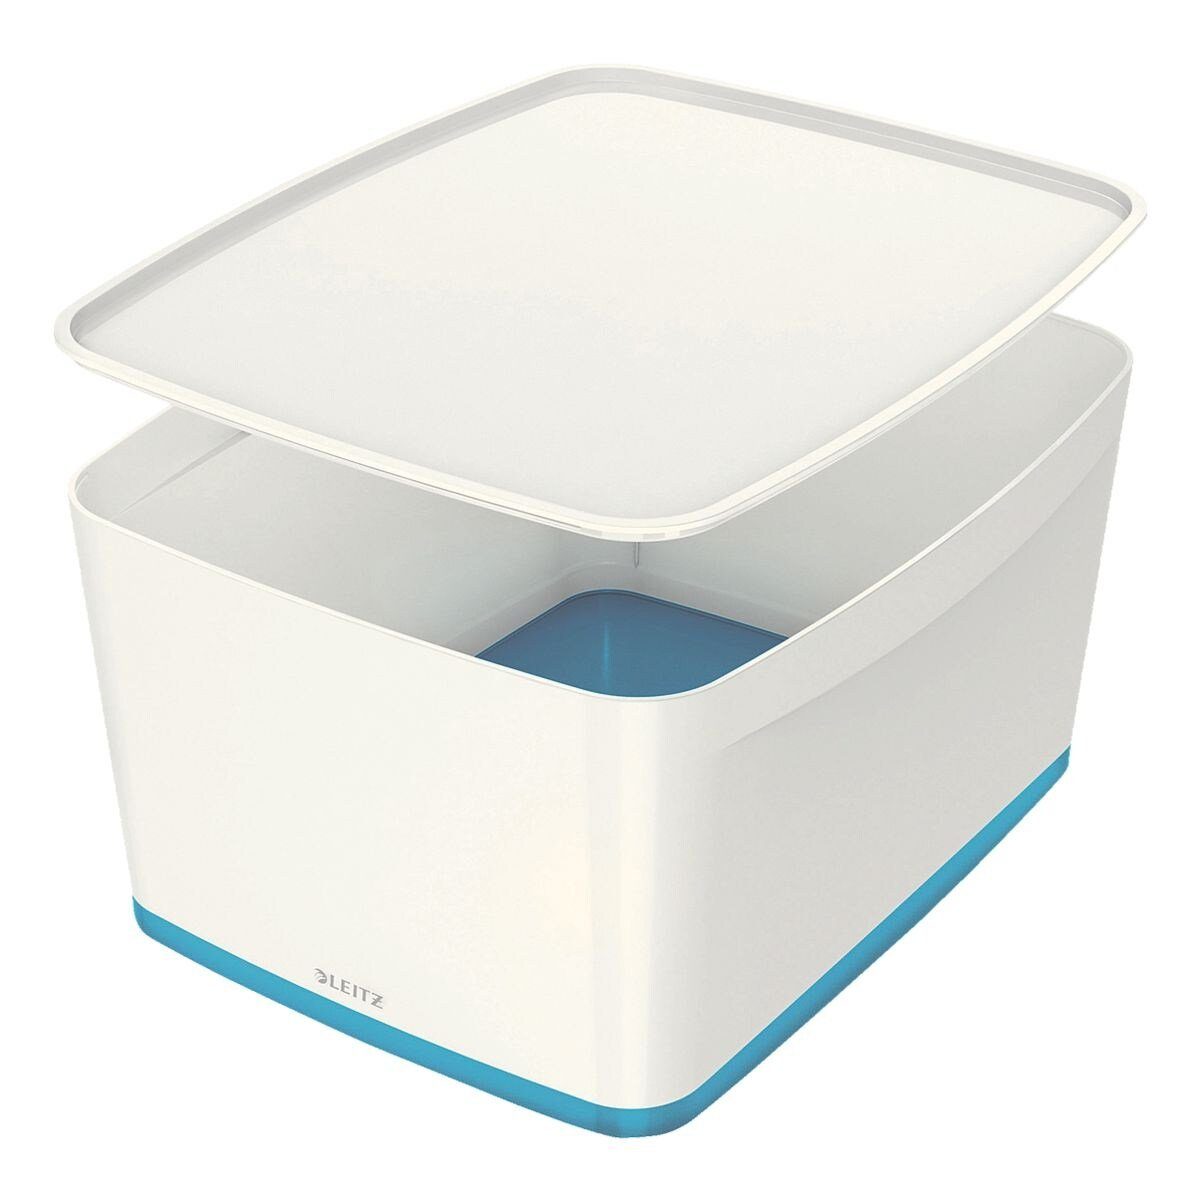 LEITZ Aufbewahrungsbox »MyBox Groß 5216«, 18 Liter, mit Deckel, stapelbar  online kaufen | OTTO